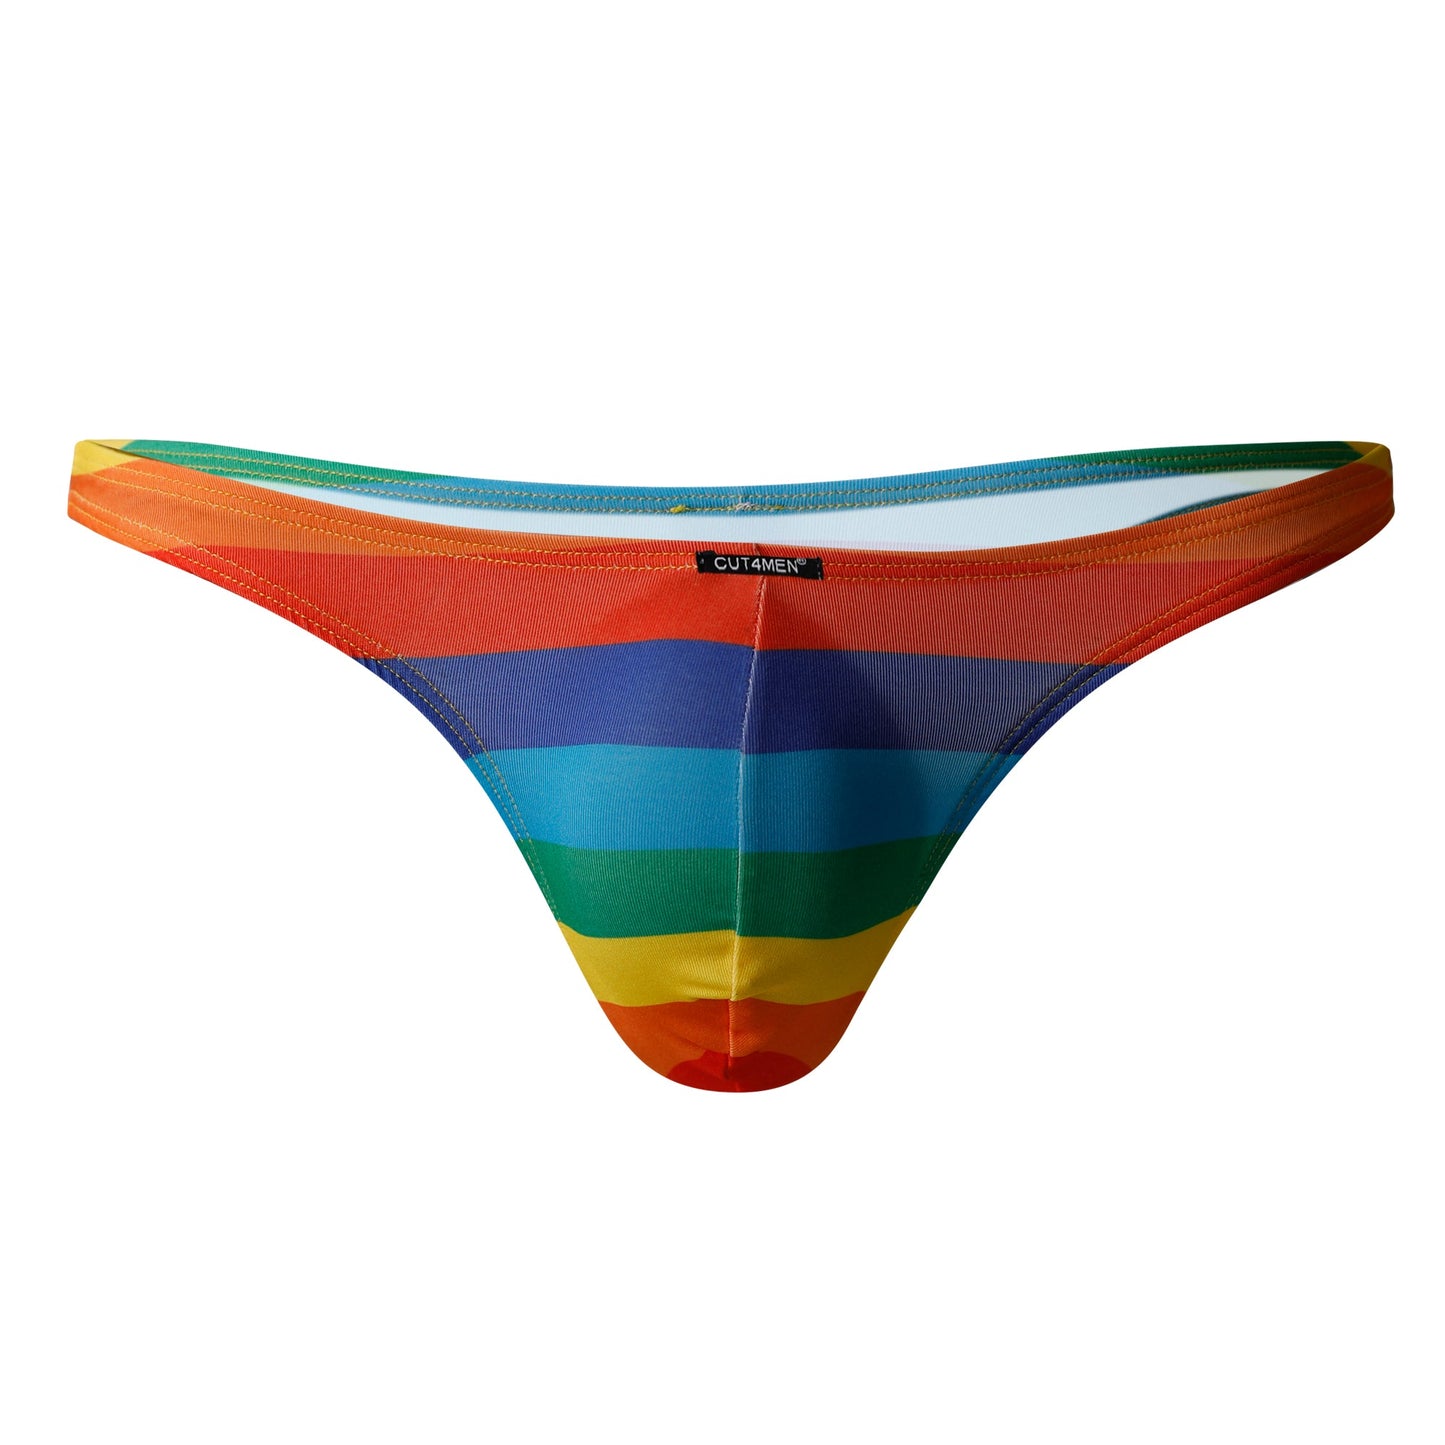 CUT4MEN - C4M01 - Low Brief Bikini Men Underwear - Rainbow - 4 Sizes - 1 Piece